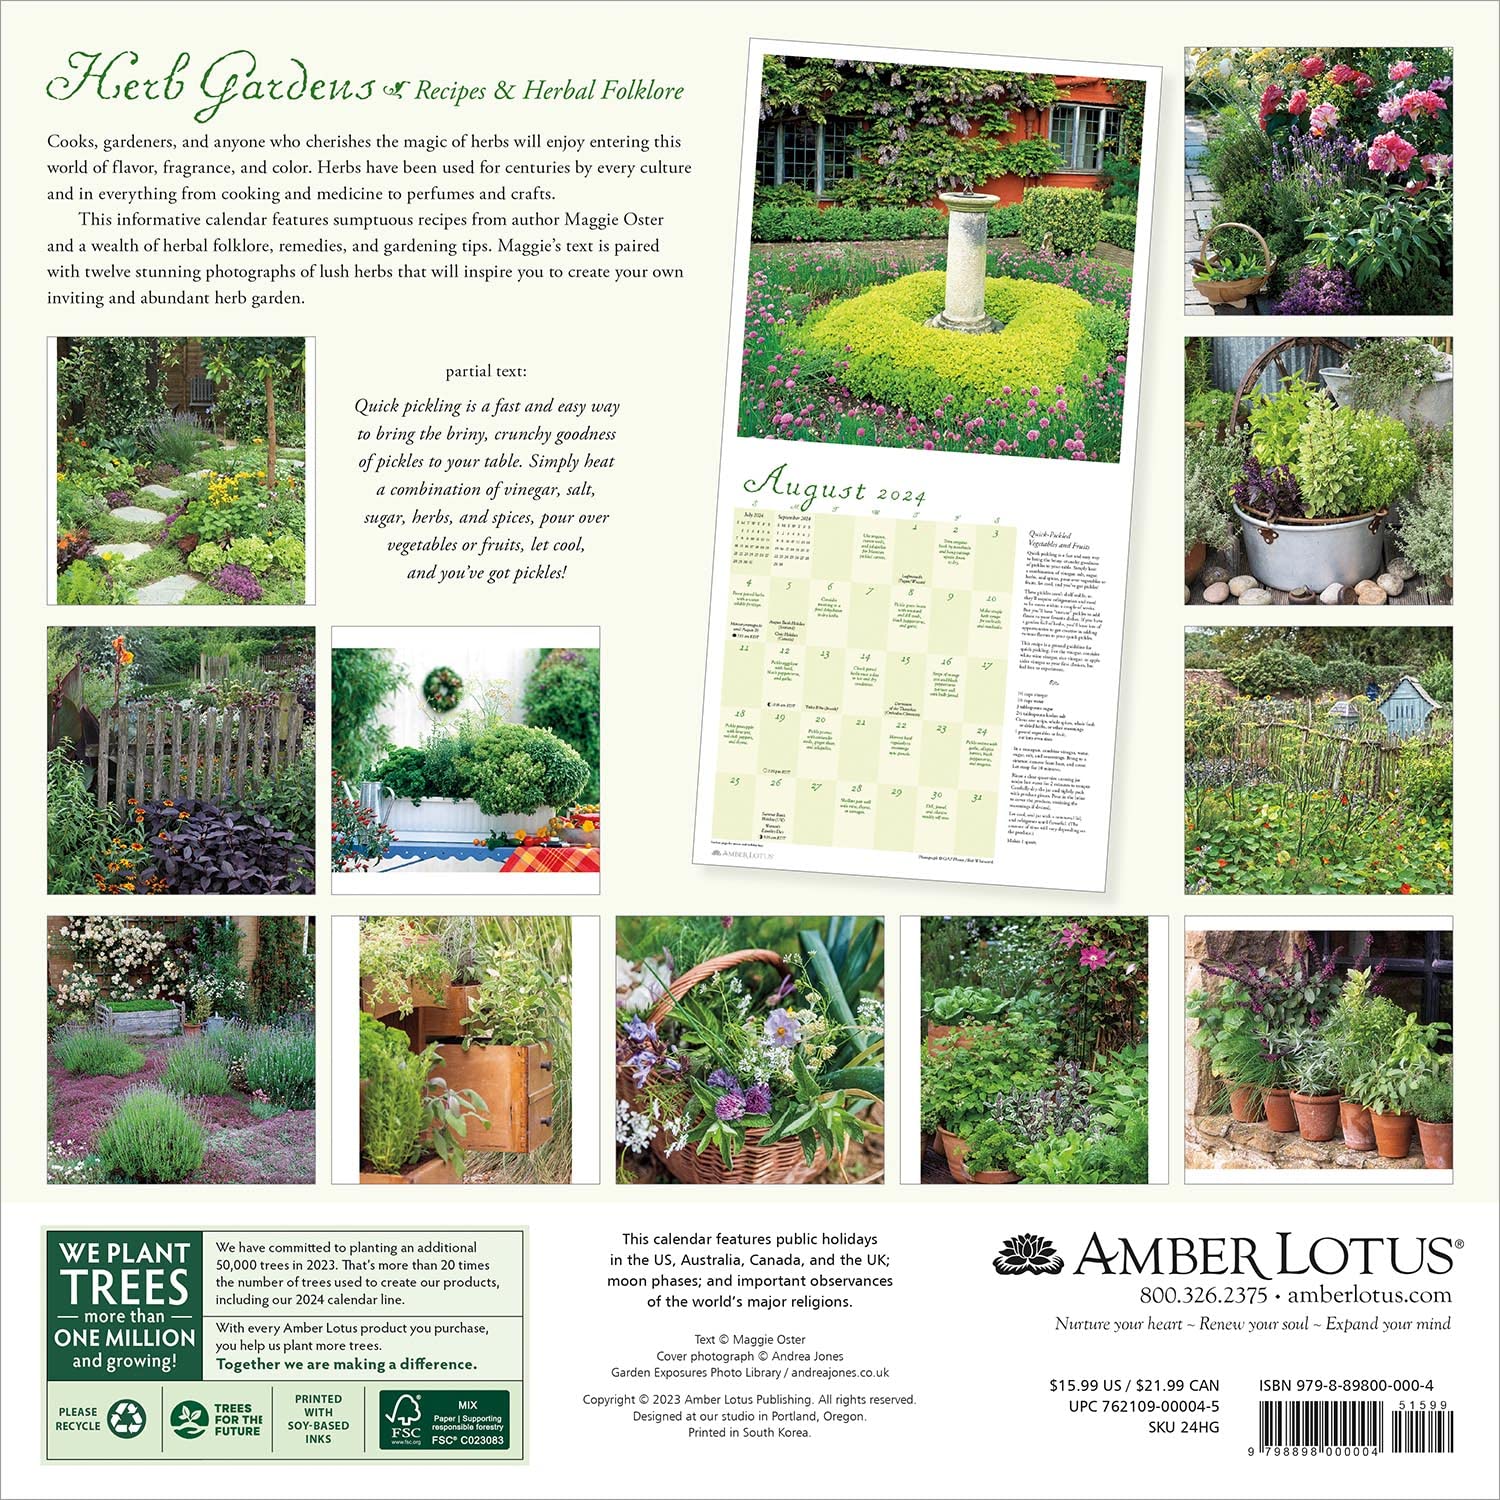 herb-gardens-2024-wall-calendar